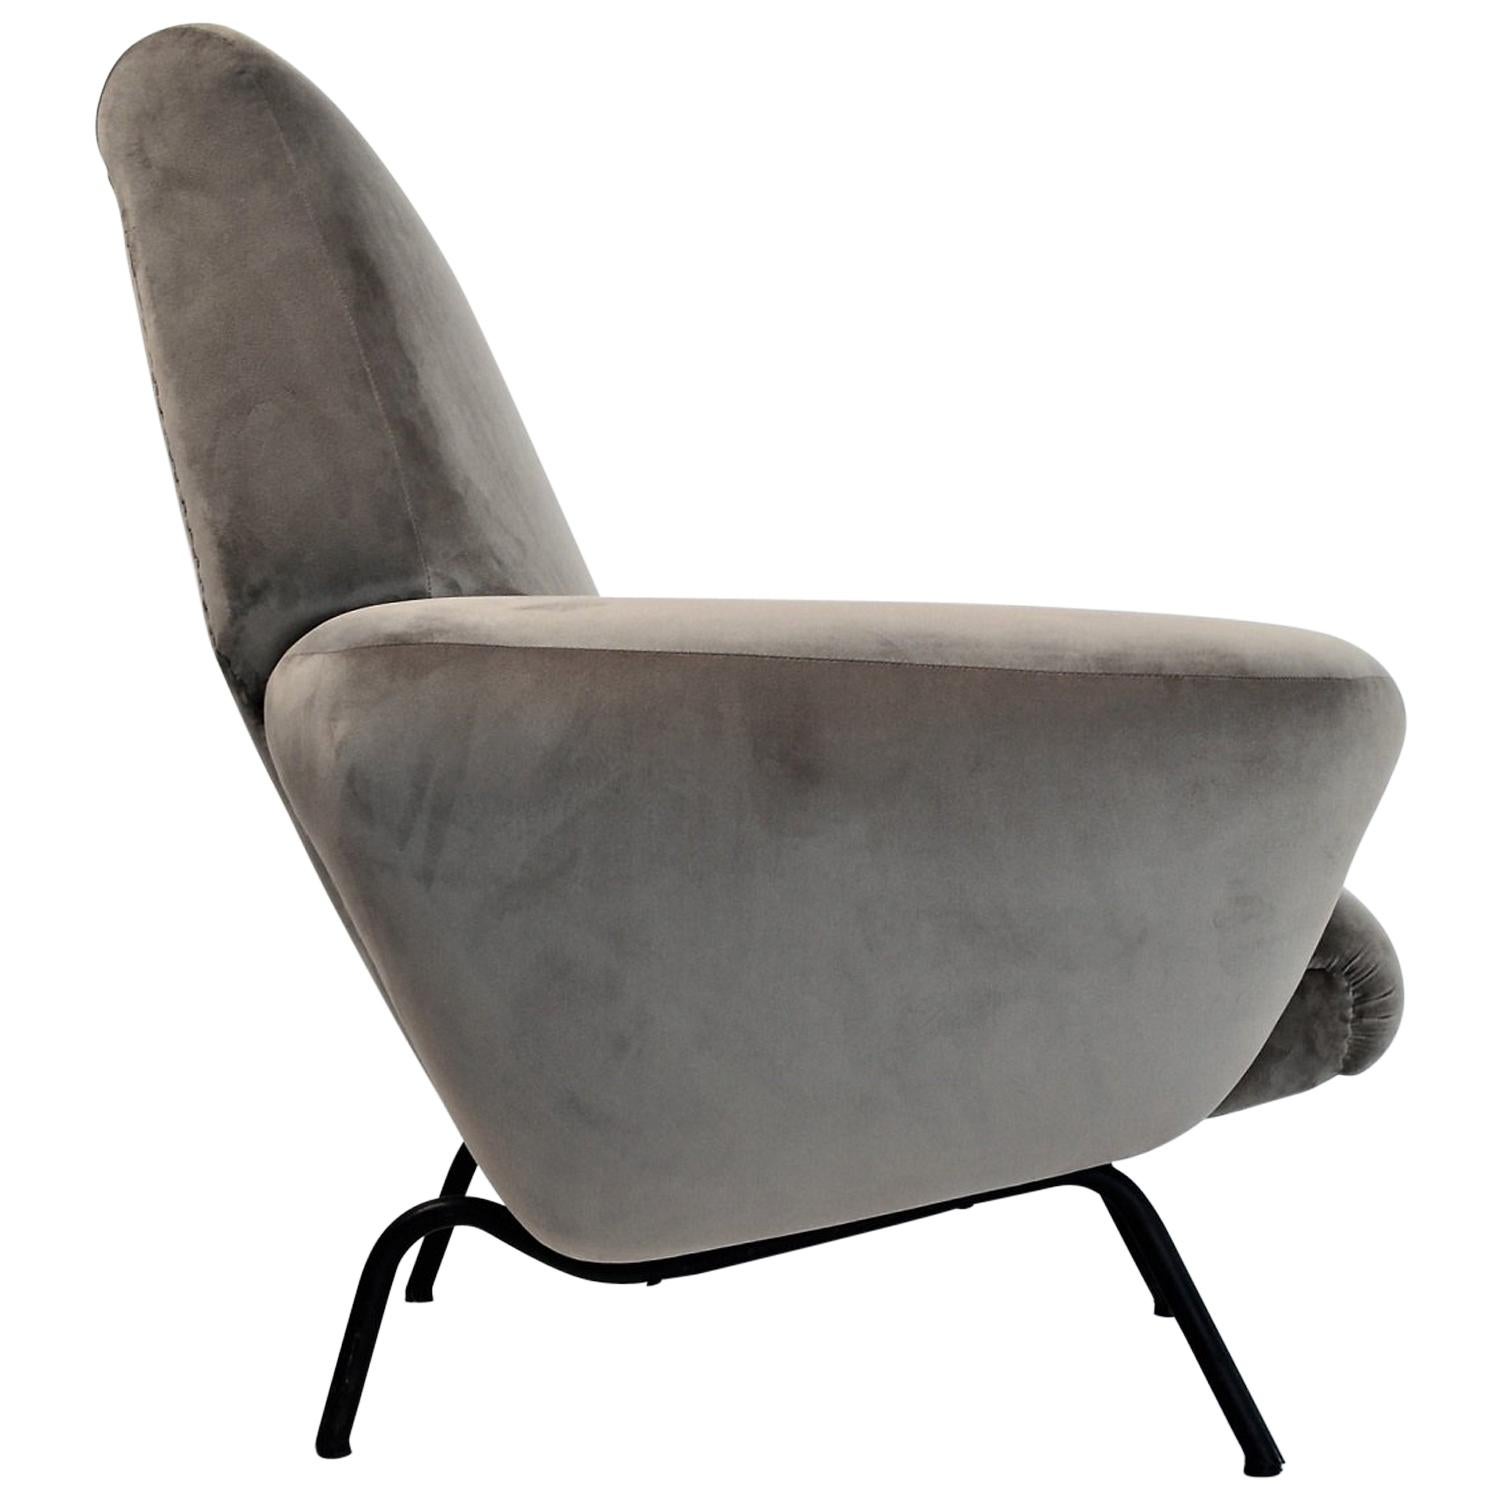 Italian Midcentury Armchair Re-upholstered in Grey Soft Velvet, 1950s